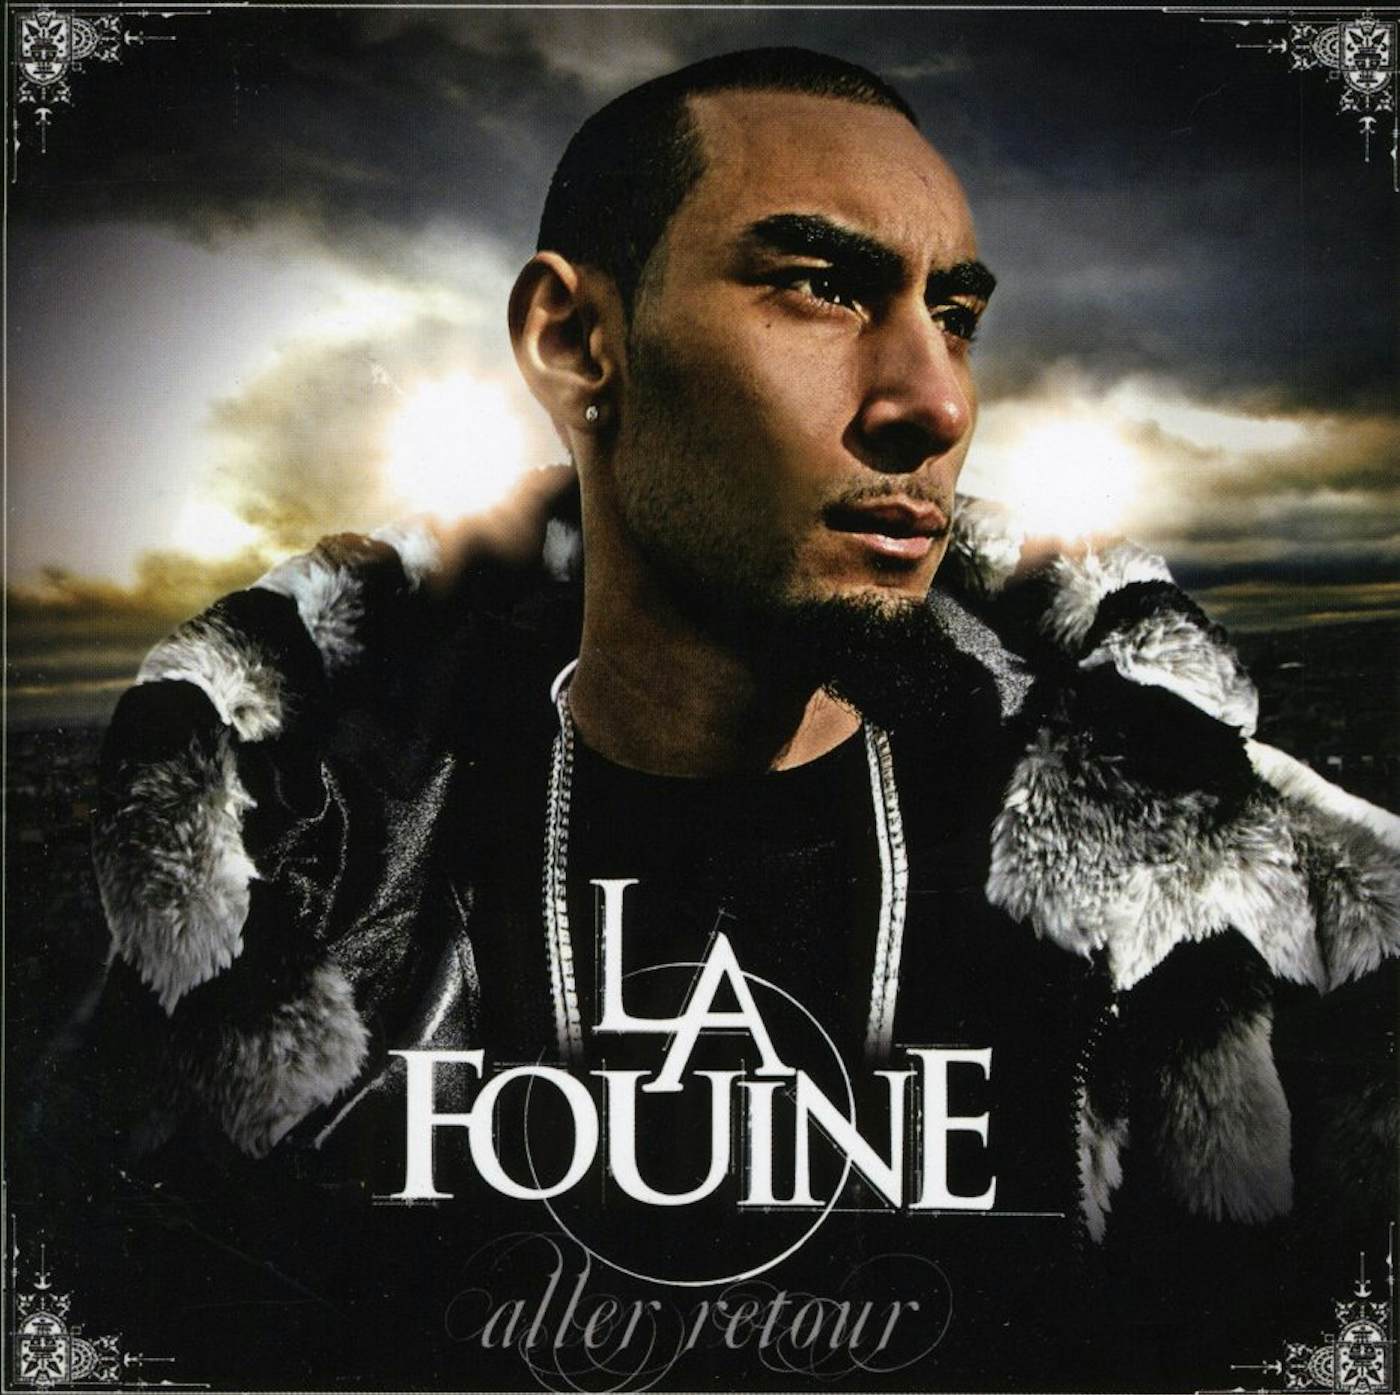 La Fouine ALLER RETOUR CD